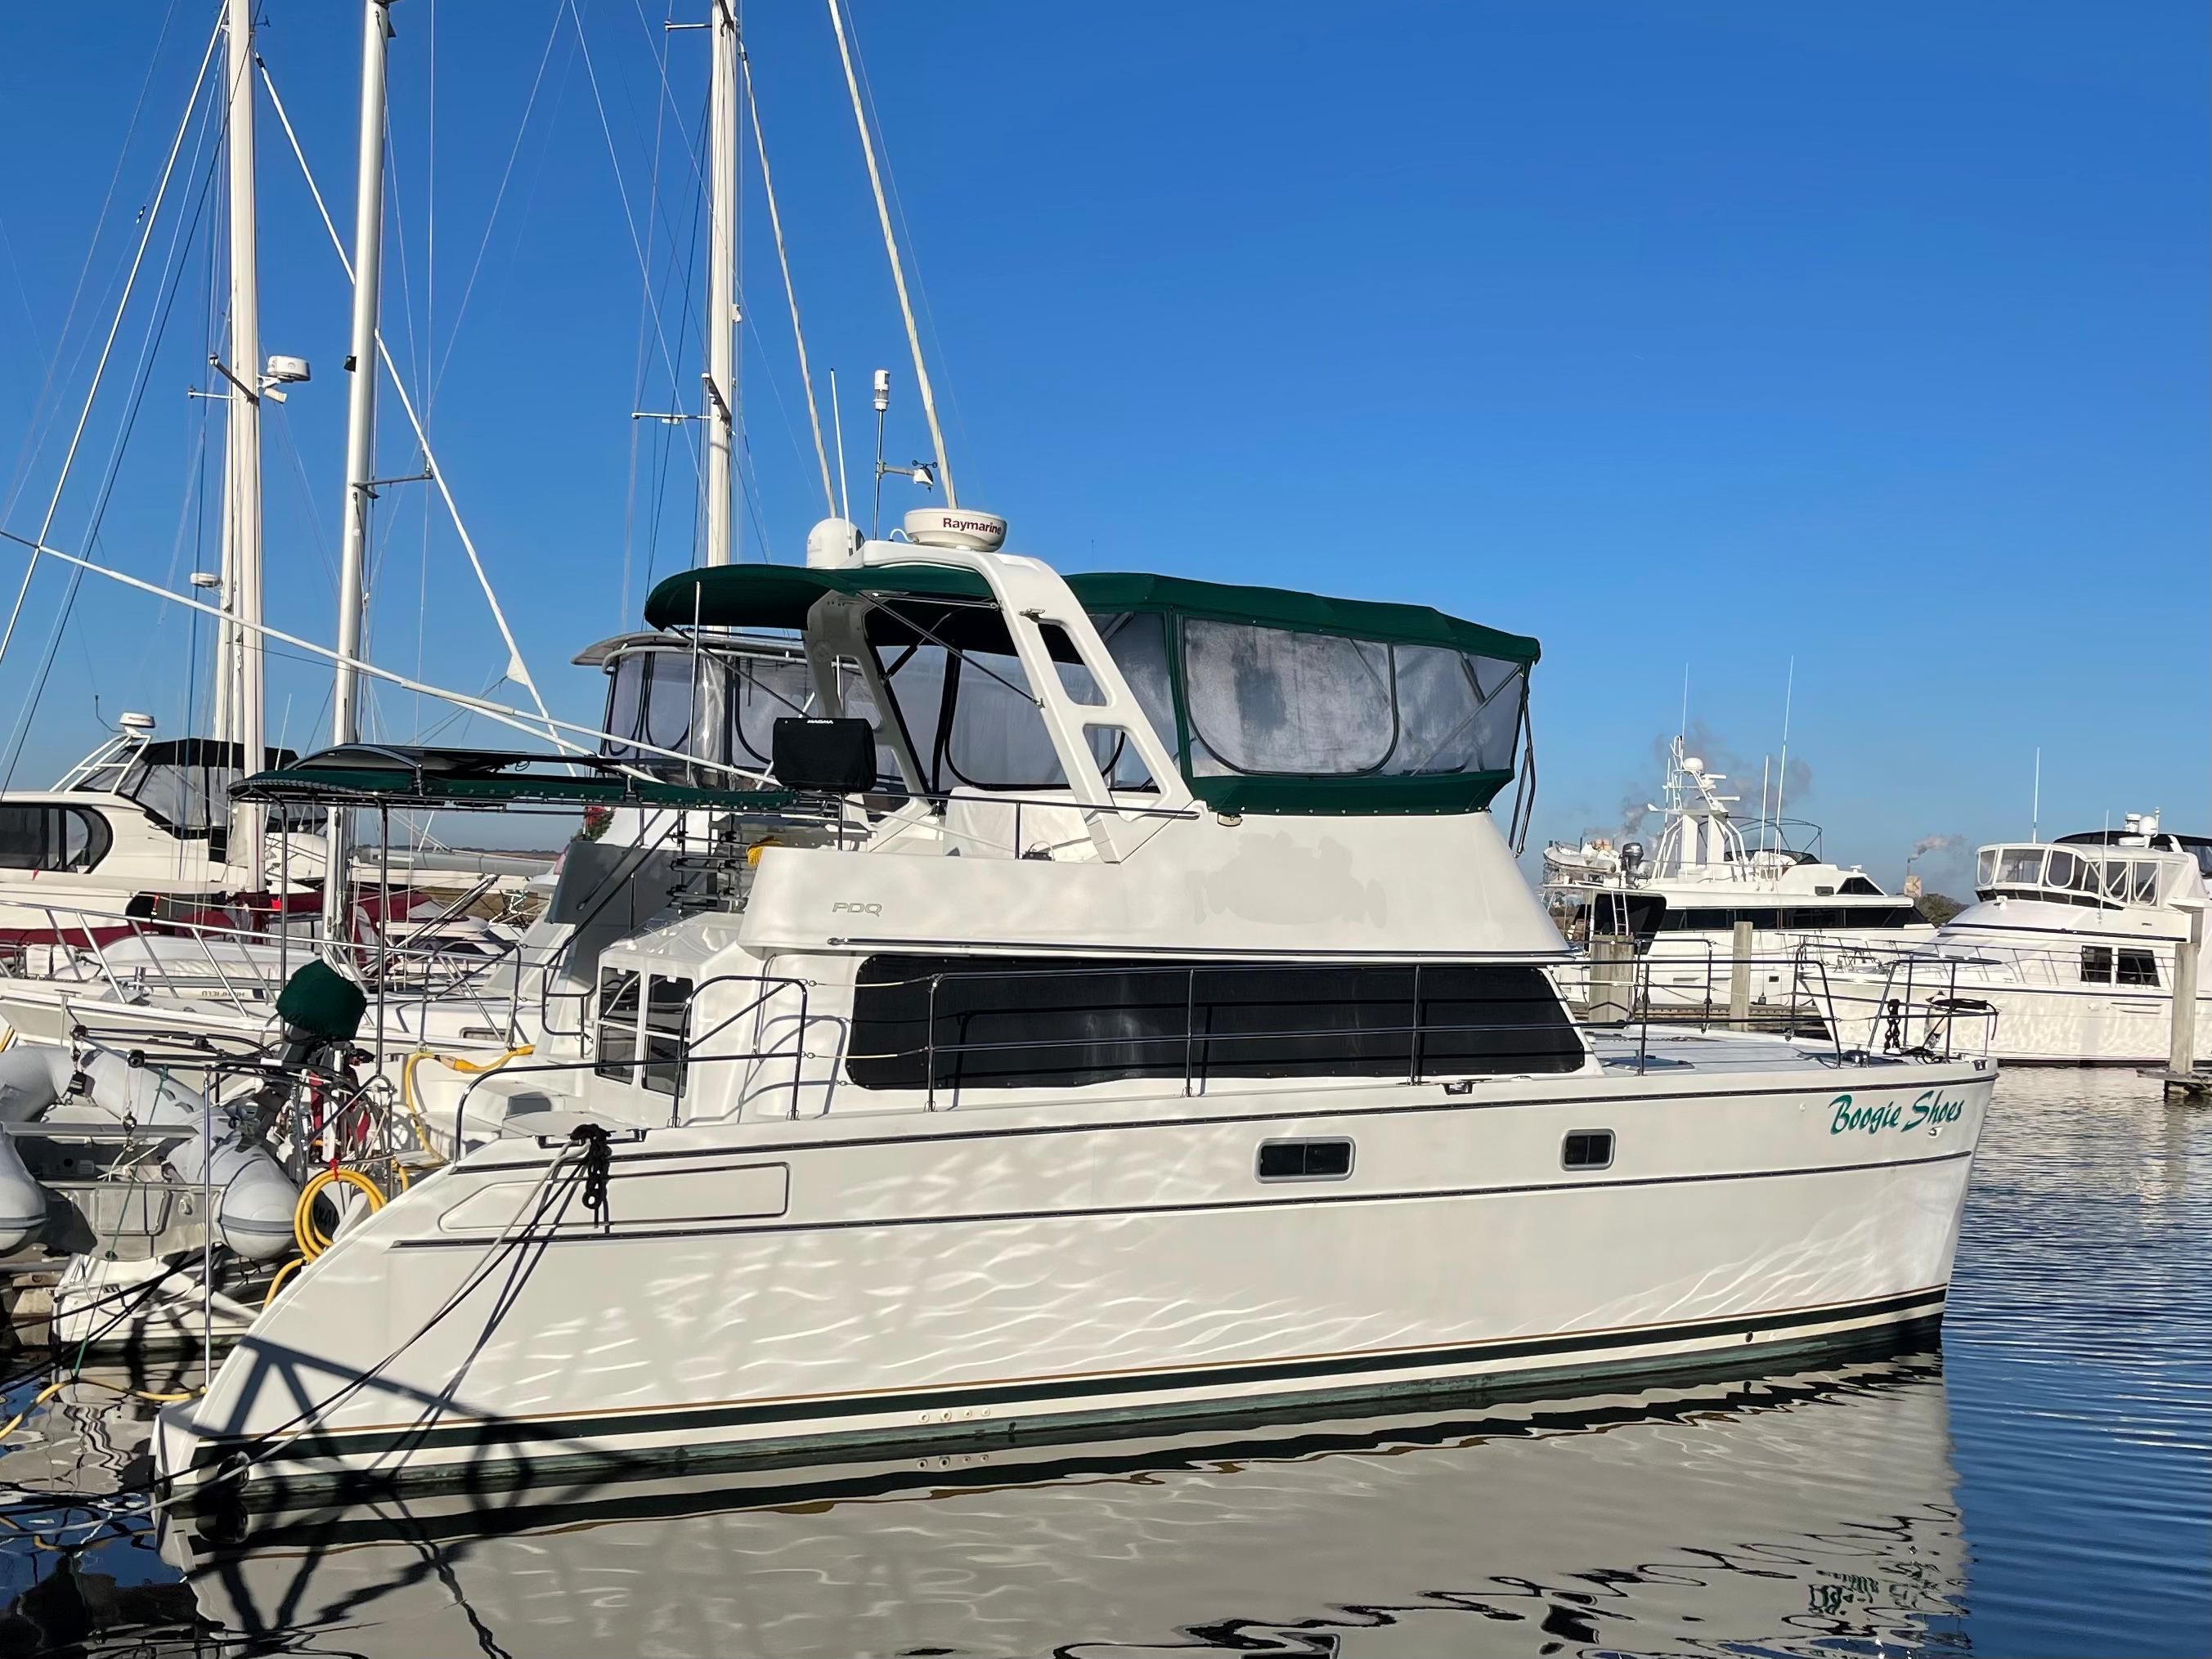 pdq 41 power catamaran for sale